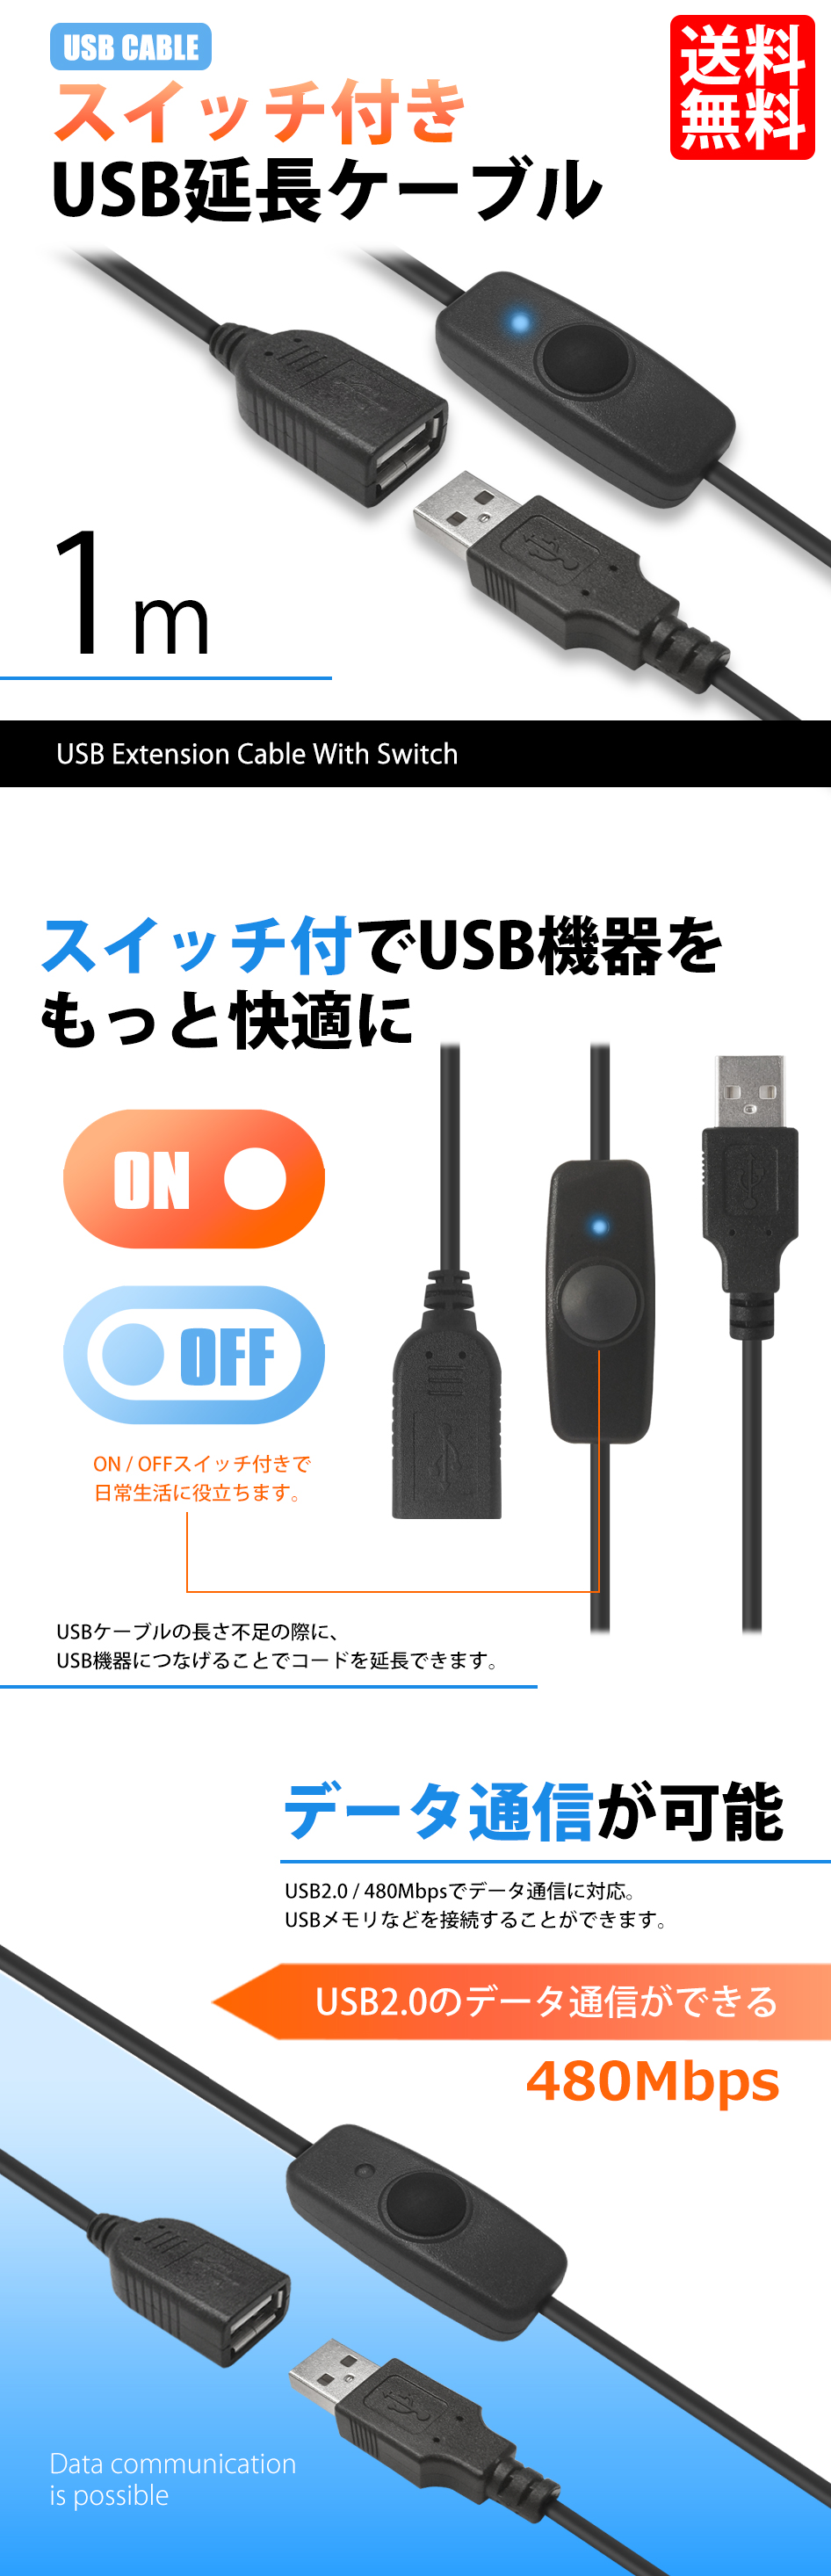 スイッチ付きケーブル USB延長ケーブル TYPE-A USB ケーブル 1m 711051 送料無料 PCケーブル、コネクタ 